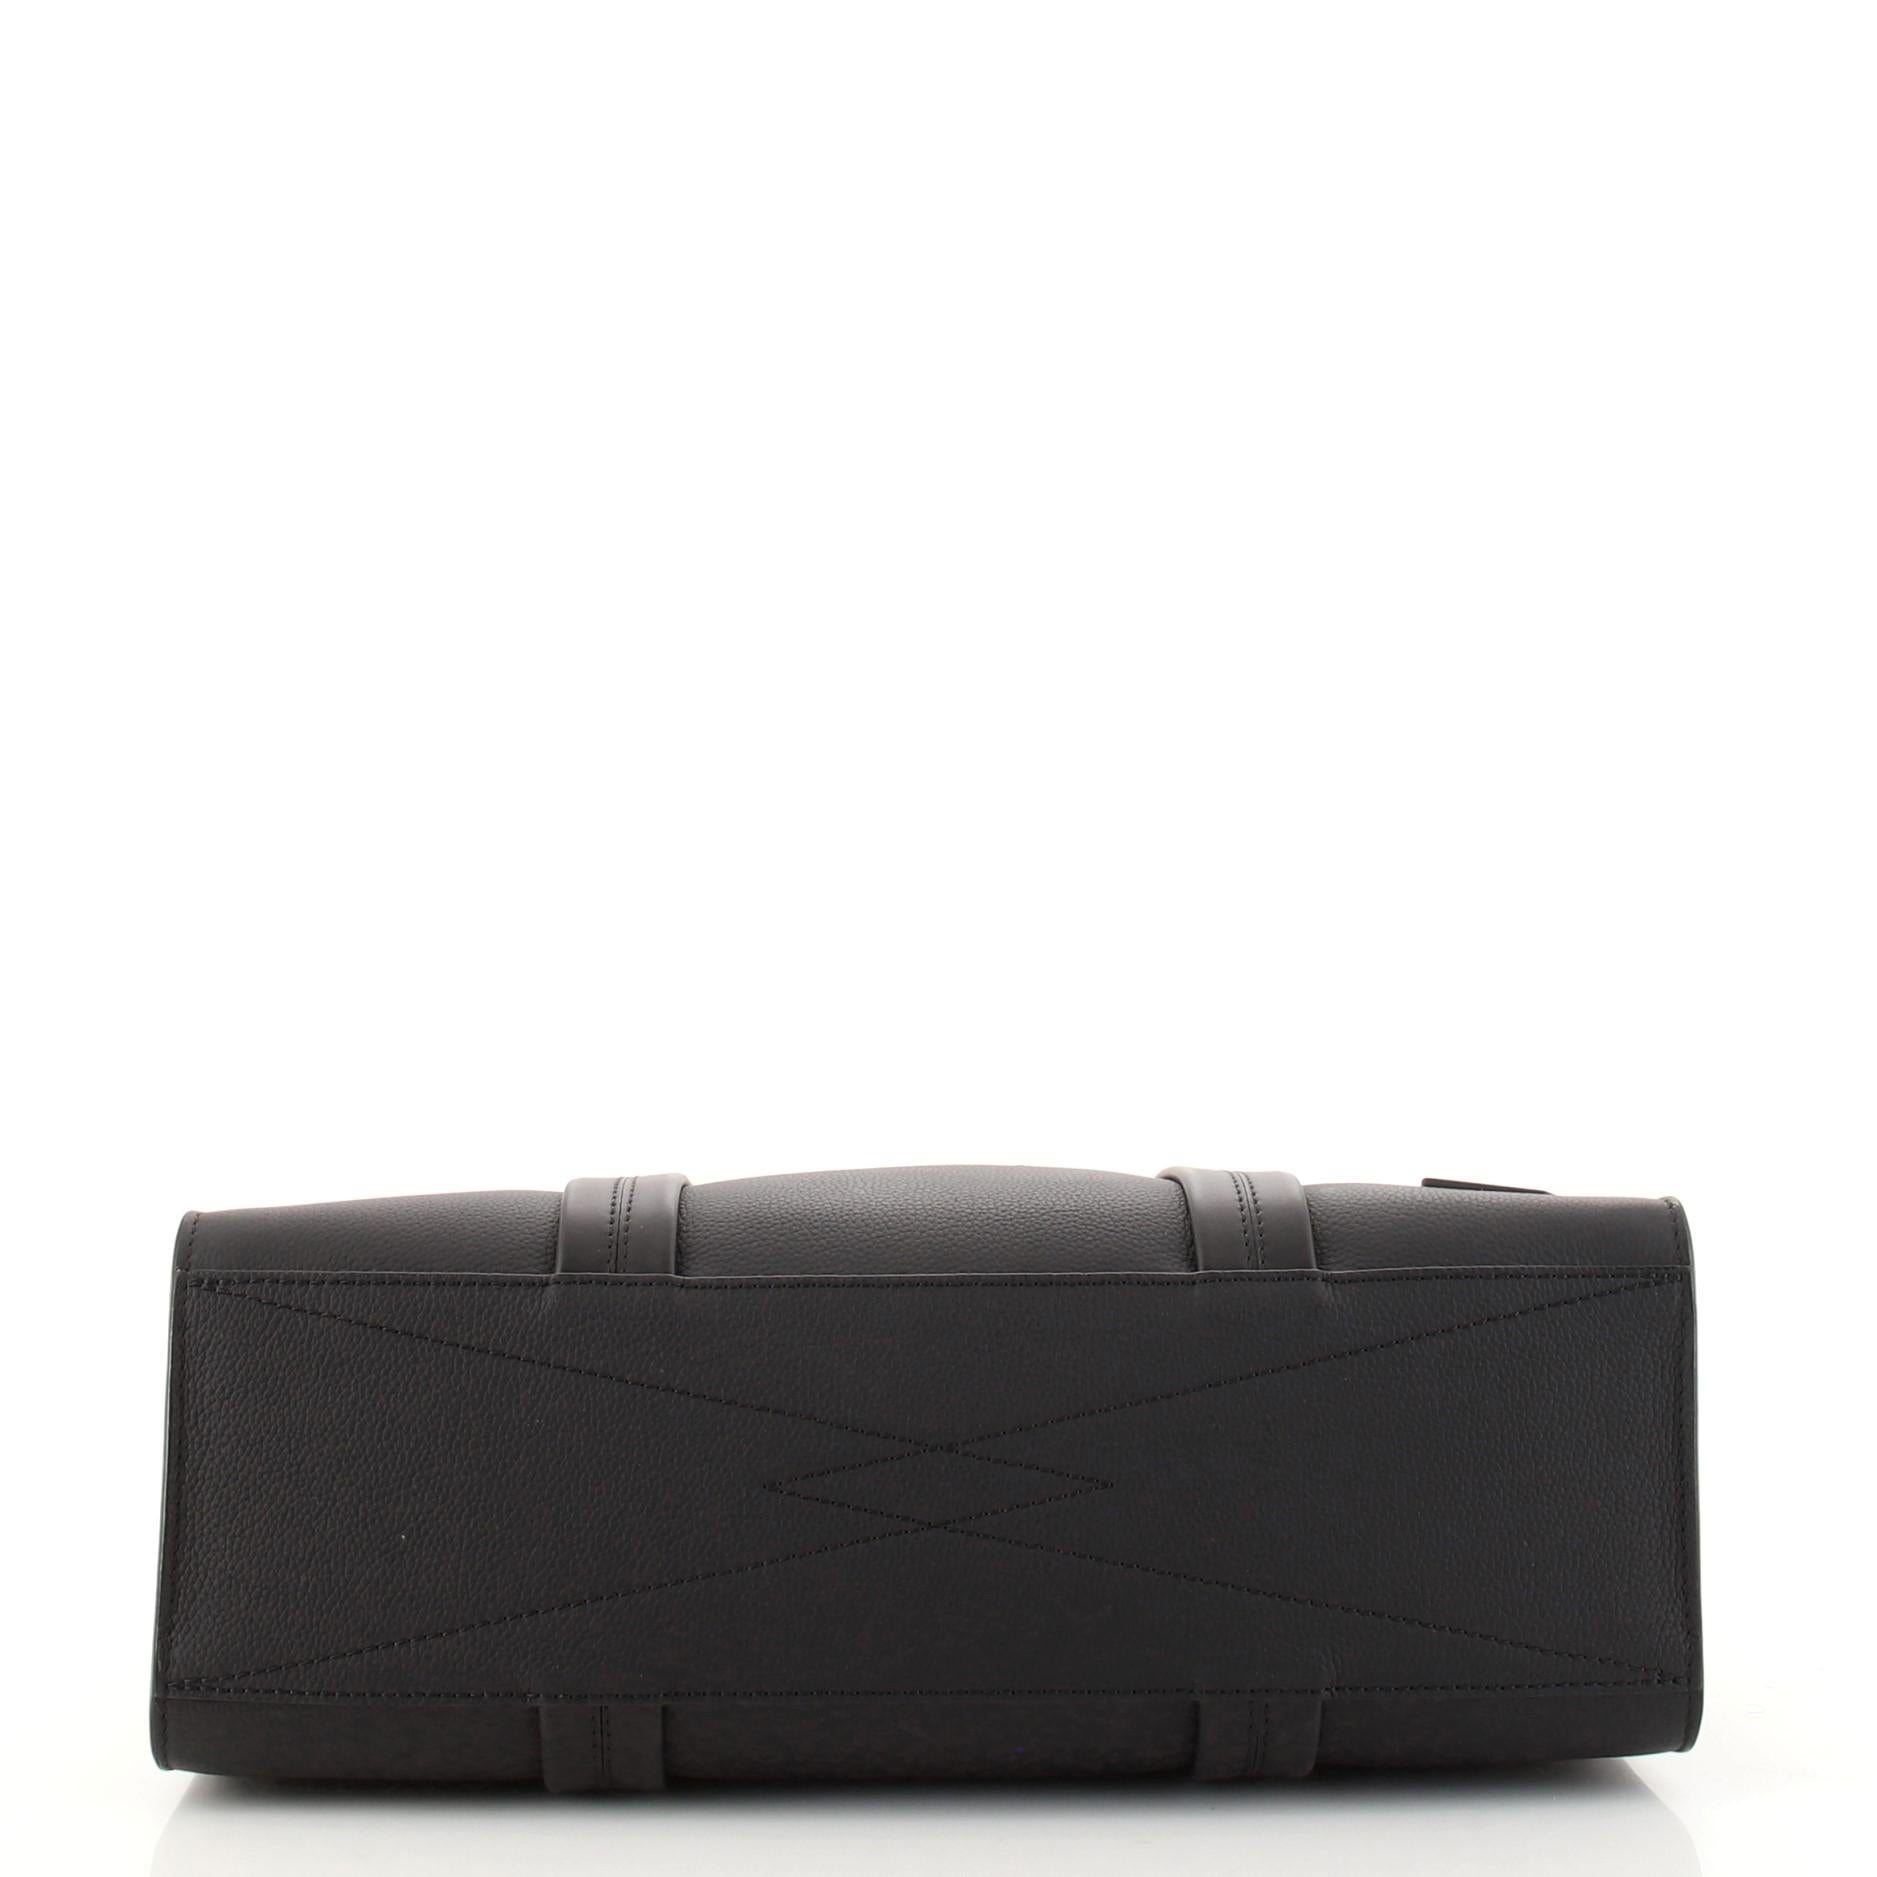 Louis Vuitton Aerogram Tote Leather 1